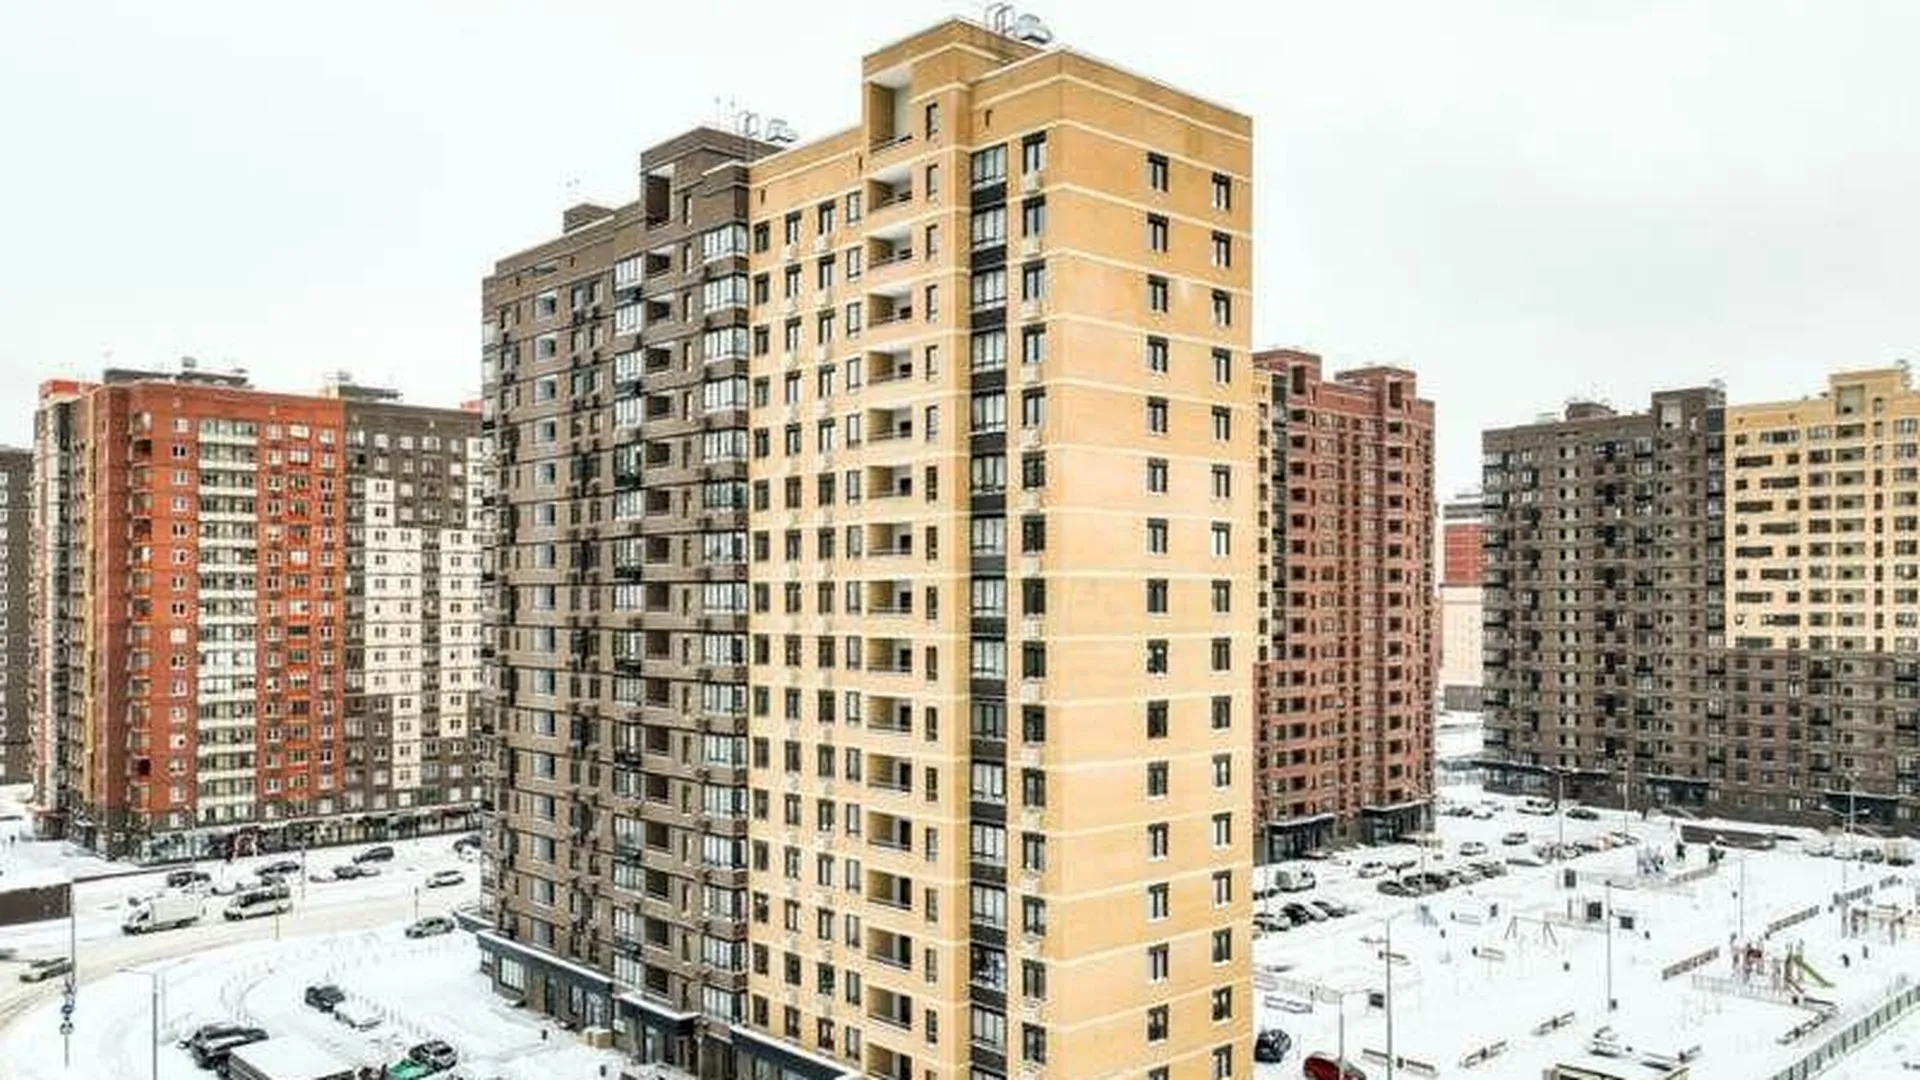 Еще 43 здания в Подмосковье получили разрешения на ввод в эксплуатацию за неделю